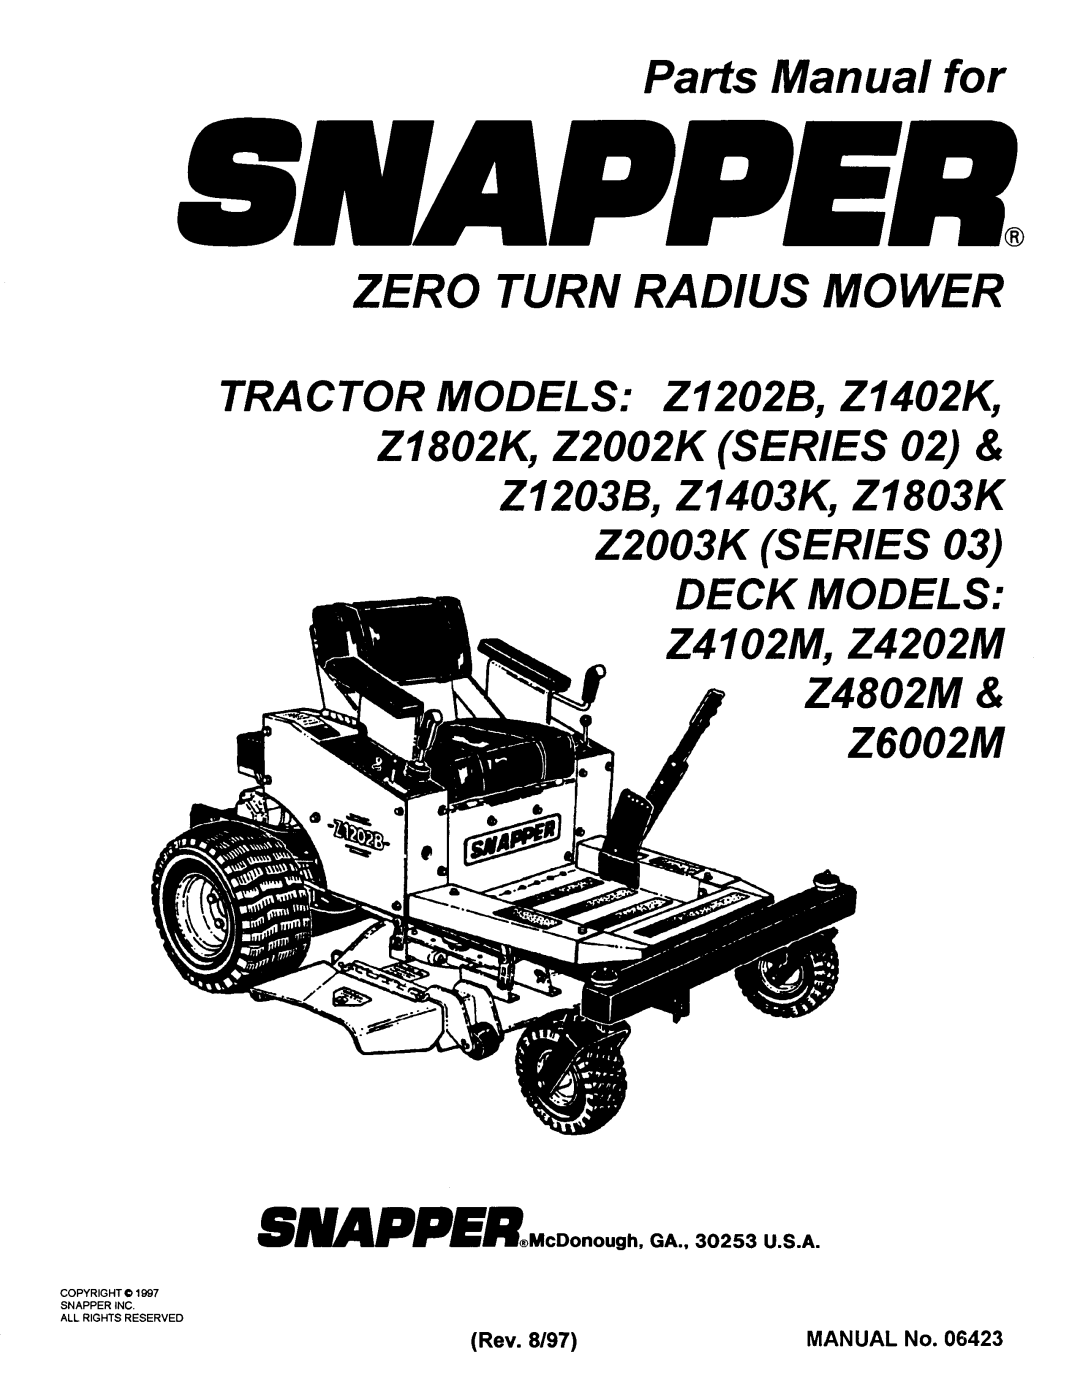 Snapper Z4802M, Z4202M, Z4102M, Z1802K, z2003k, z1403k, Z1203B, Z1202B, Z2003K (Series 03), Z2002K (Series 02), Z1803K manual 